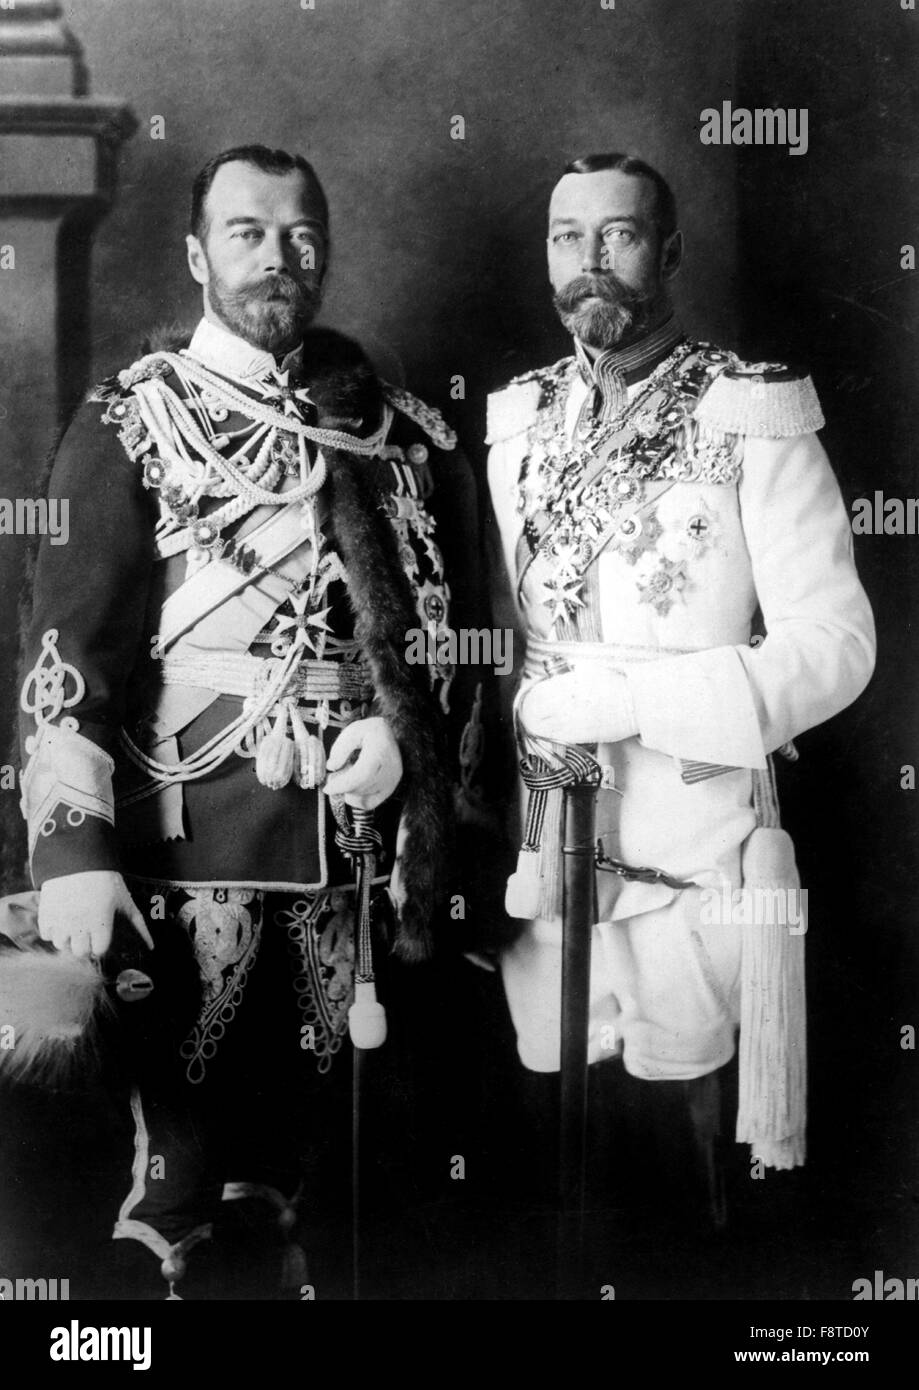 Le Tsar Nicolas II de Russie avec son cousin physiquement semblables, le Roi George V du Royaume-Uni (à droite), en uniformes militaires allemands à Berlin avant la guerre Banque D'Images